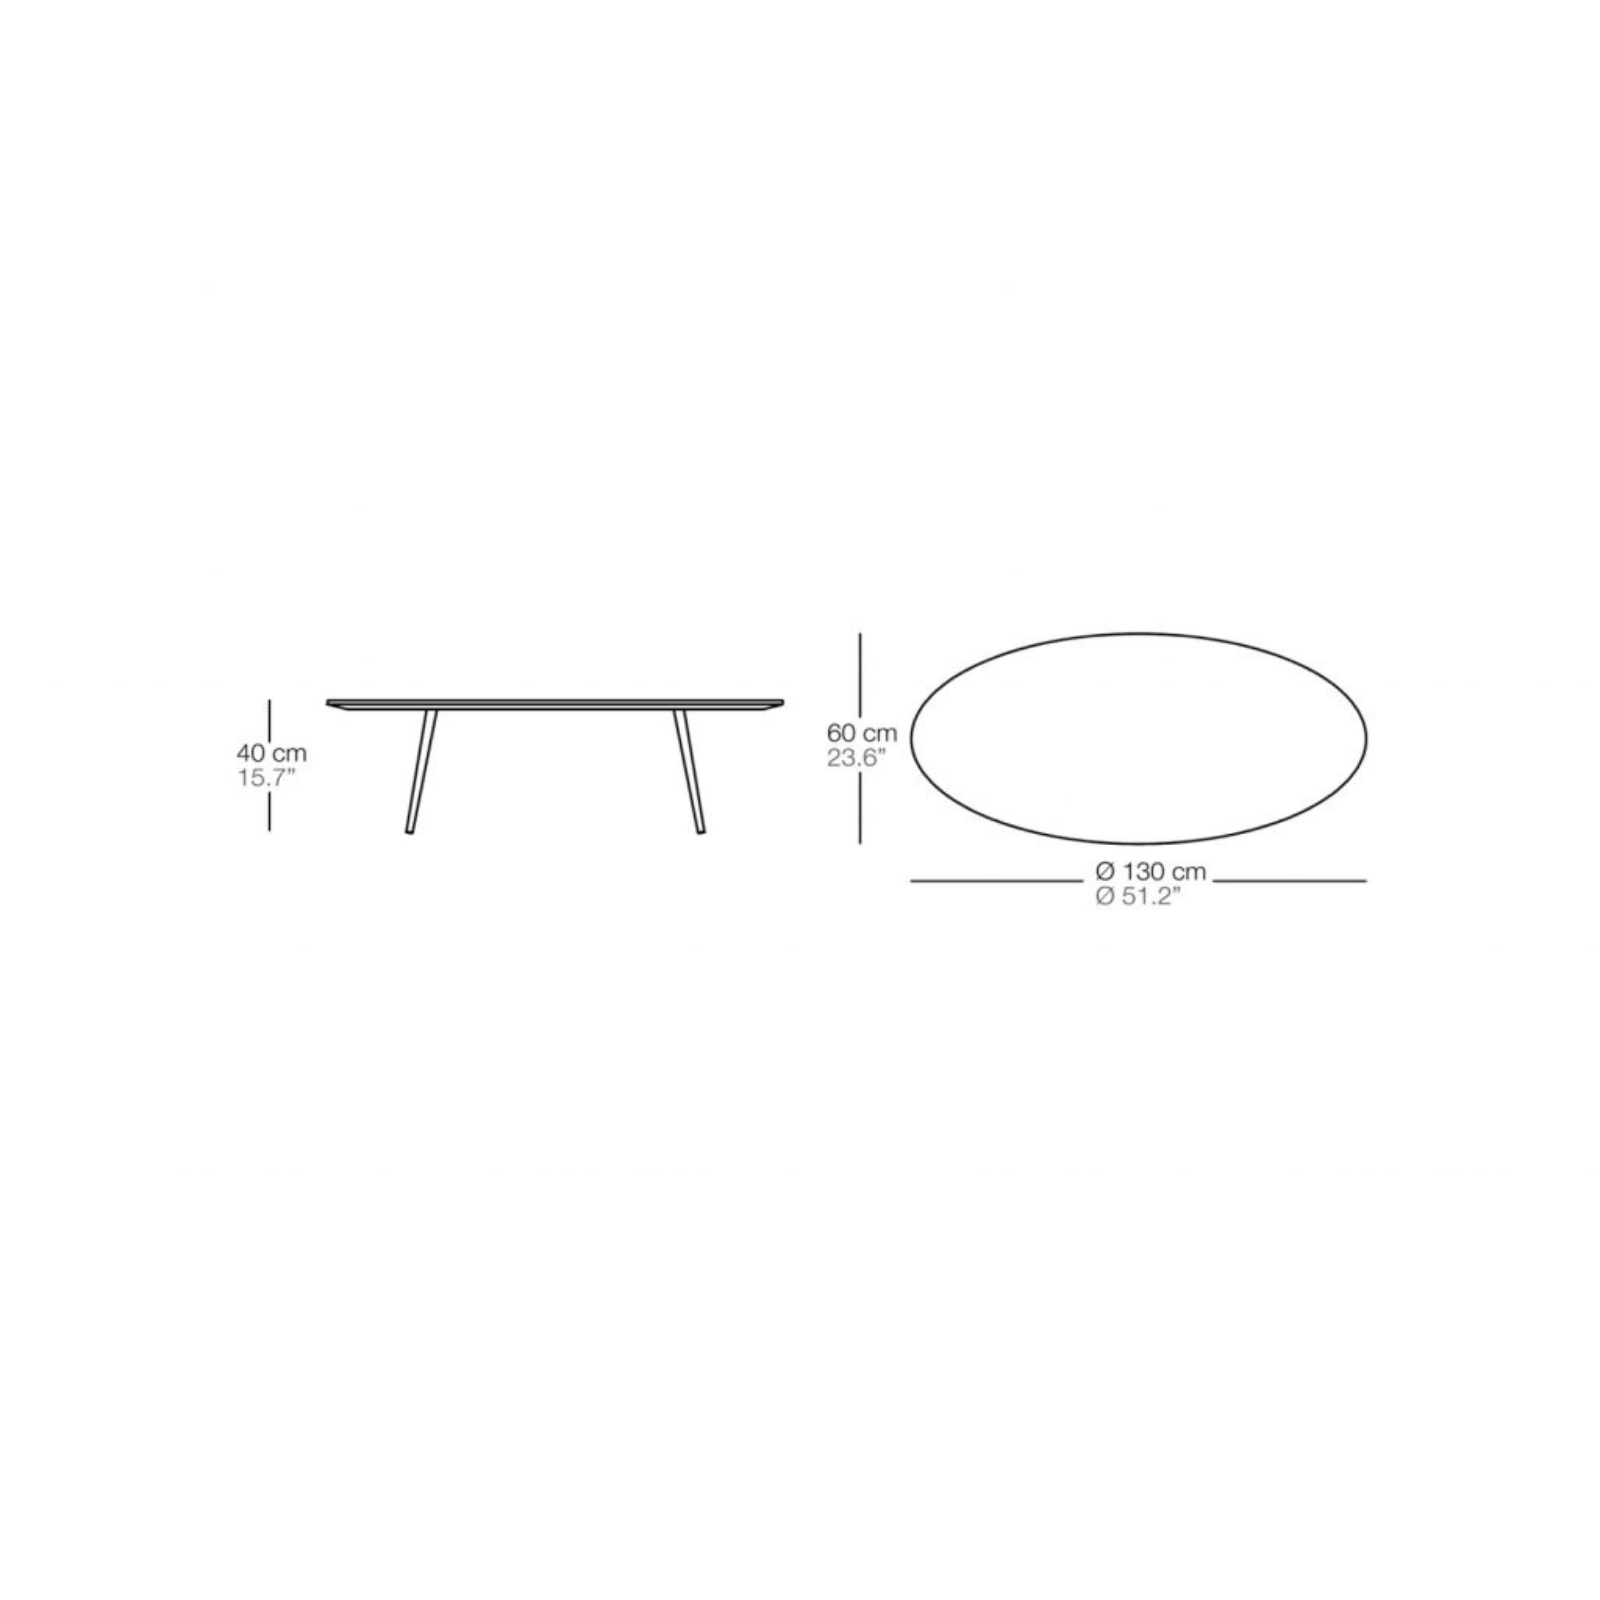 BIVAQ Vint Oval Table Dimensions